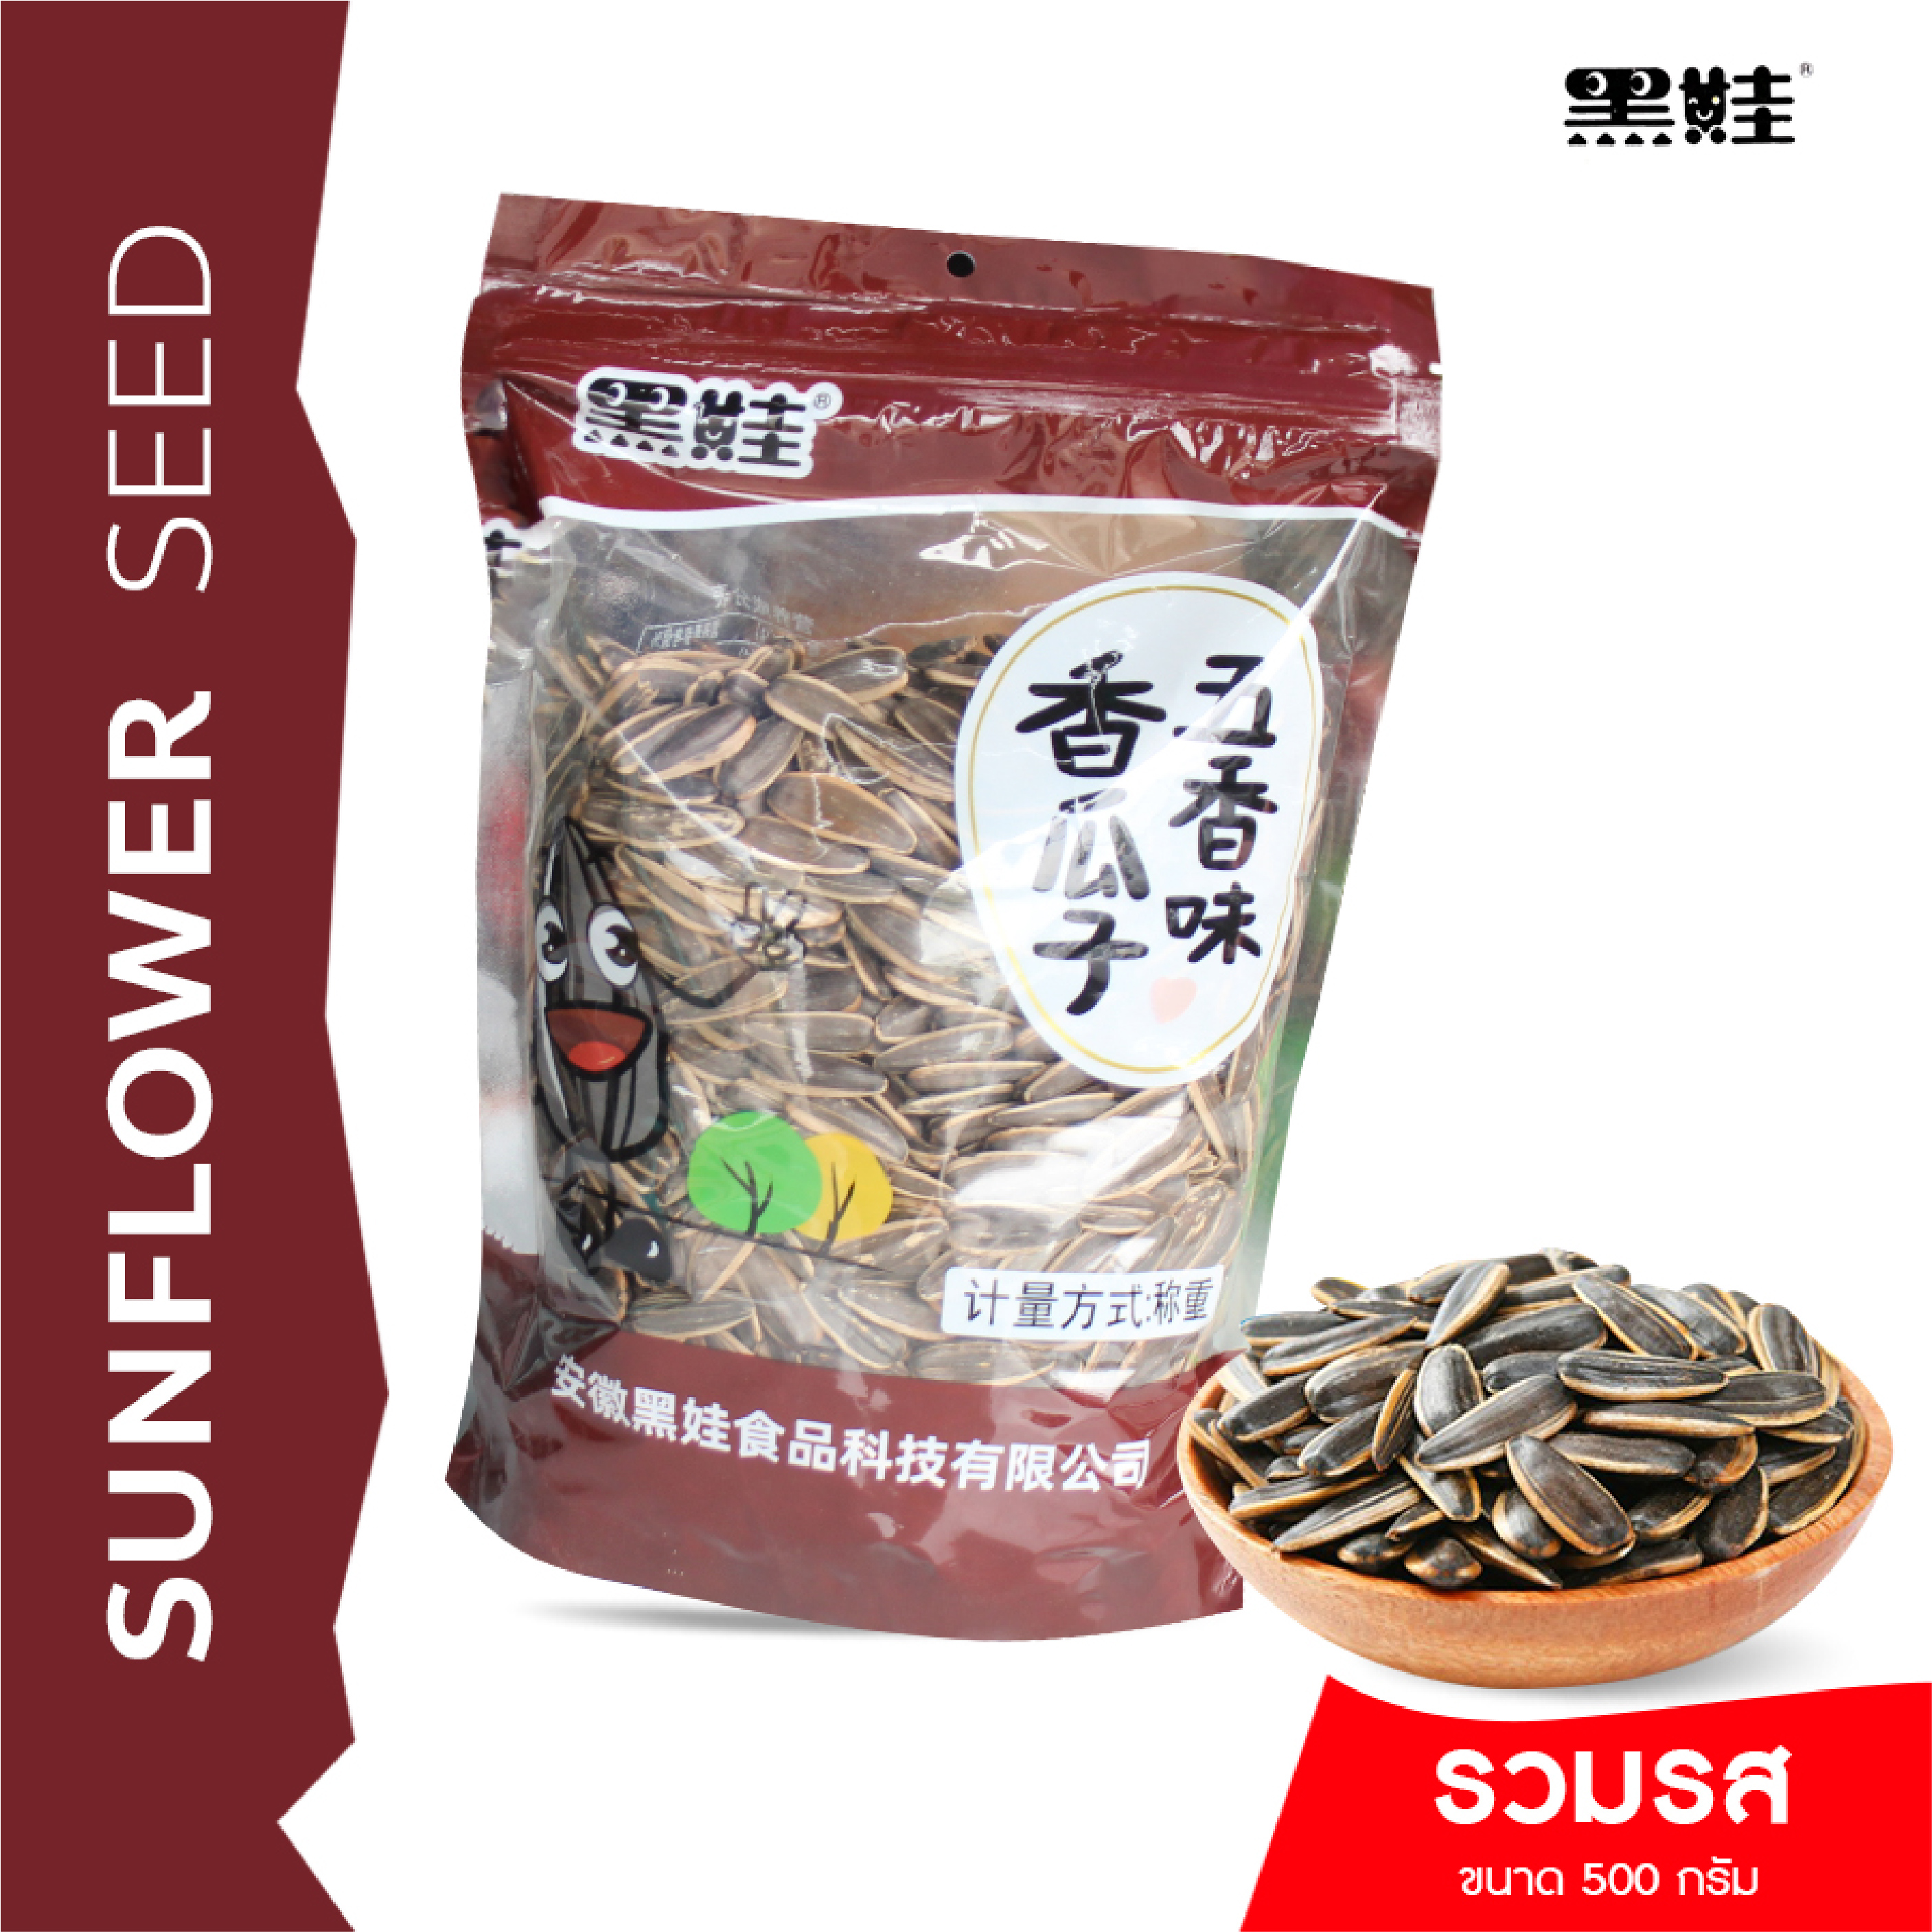 HEIWA Sunflower Seed : เมล็ดทานตะวัน ขนาด 500 กรัม 